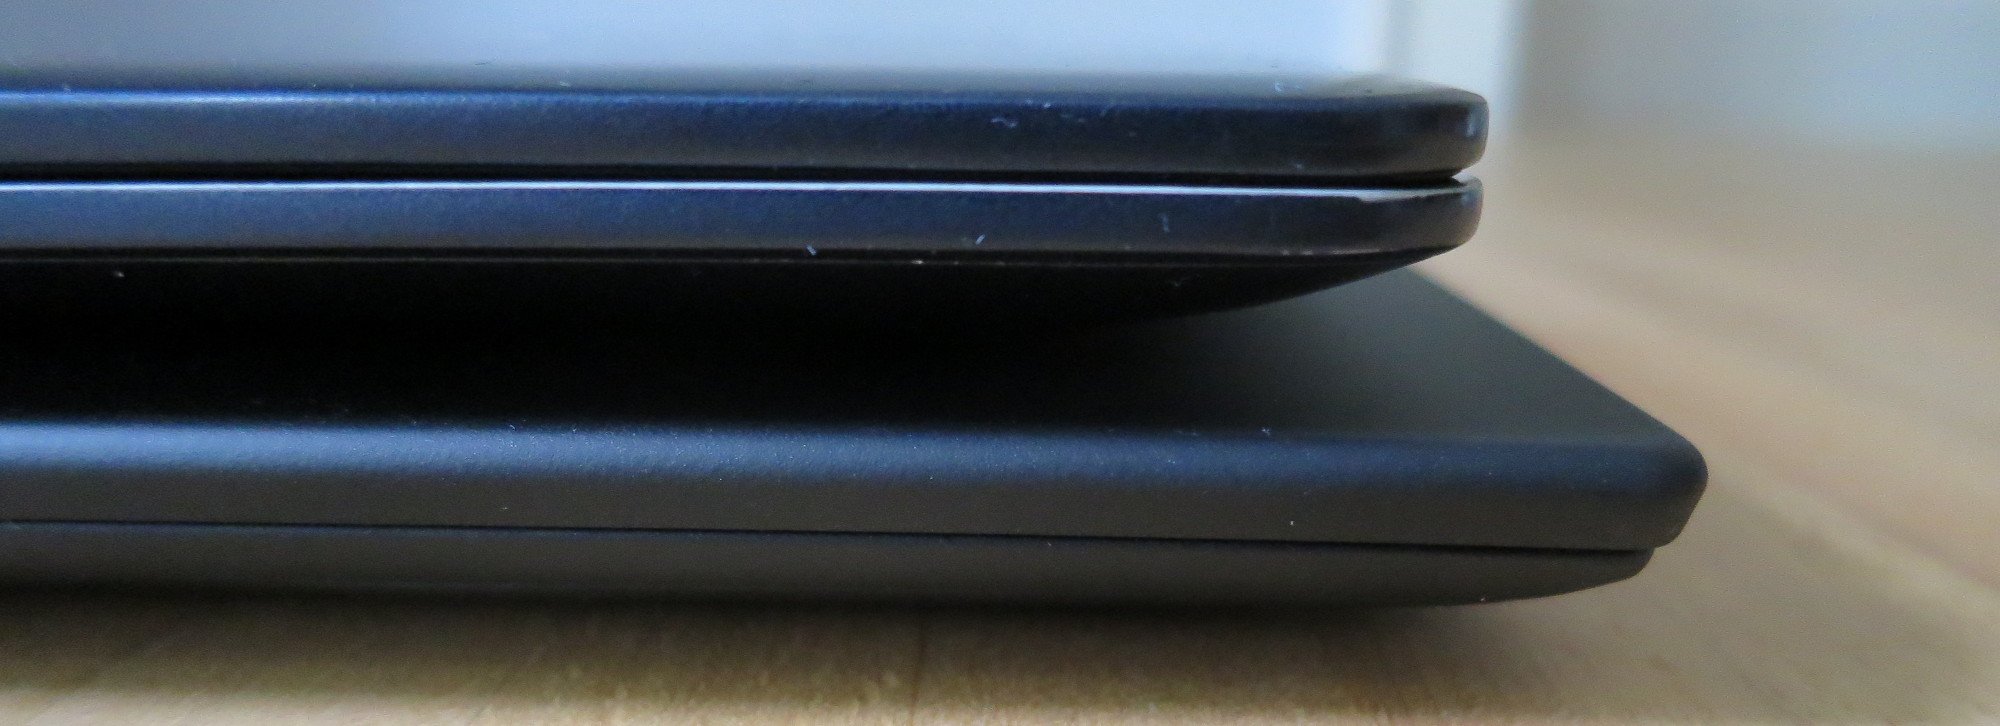 Einiziger Größenunterschied zwischen Lenovo Thinkpad X1 Carbon (unten) und Samsung Ativ Book 9: Das X1 Carbon ist wenige Millimeter breiter (Bild: Peter Giesecke)